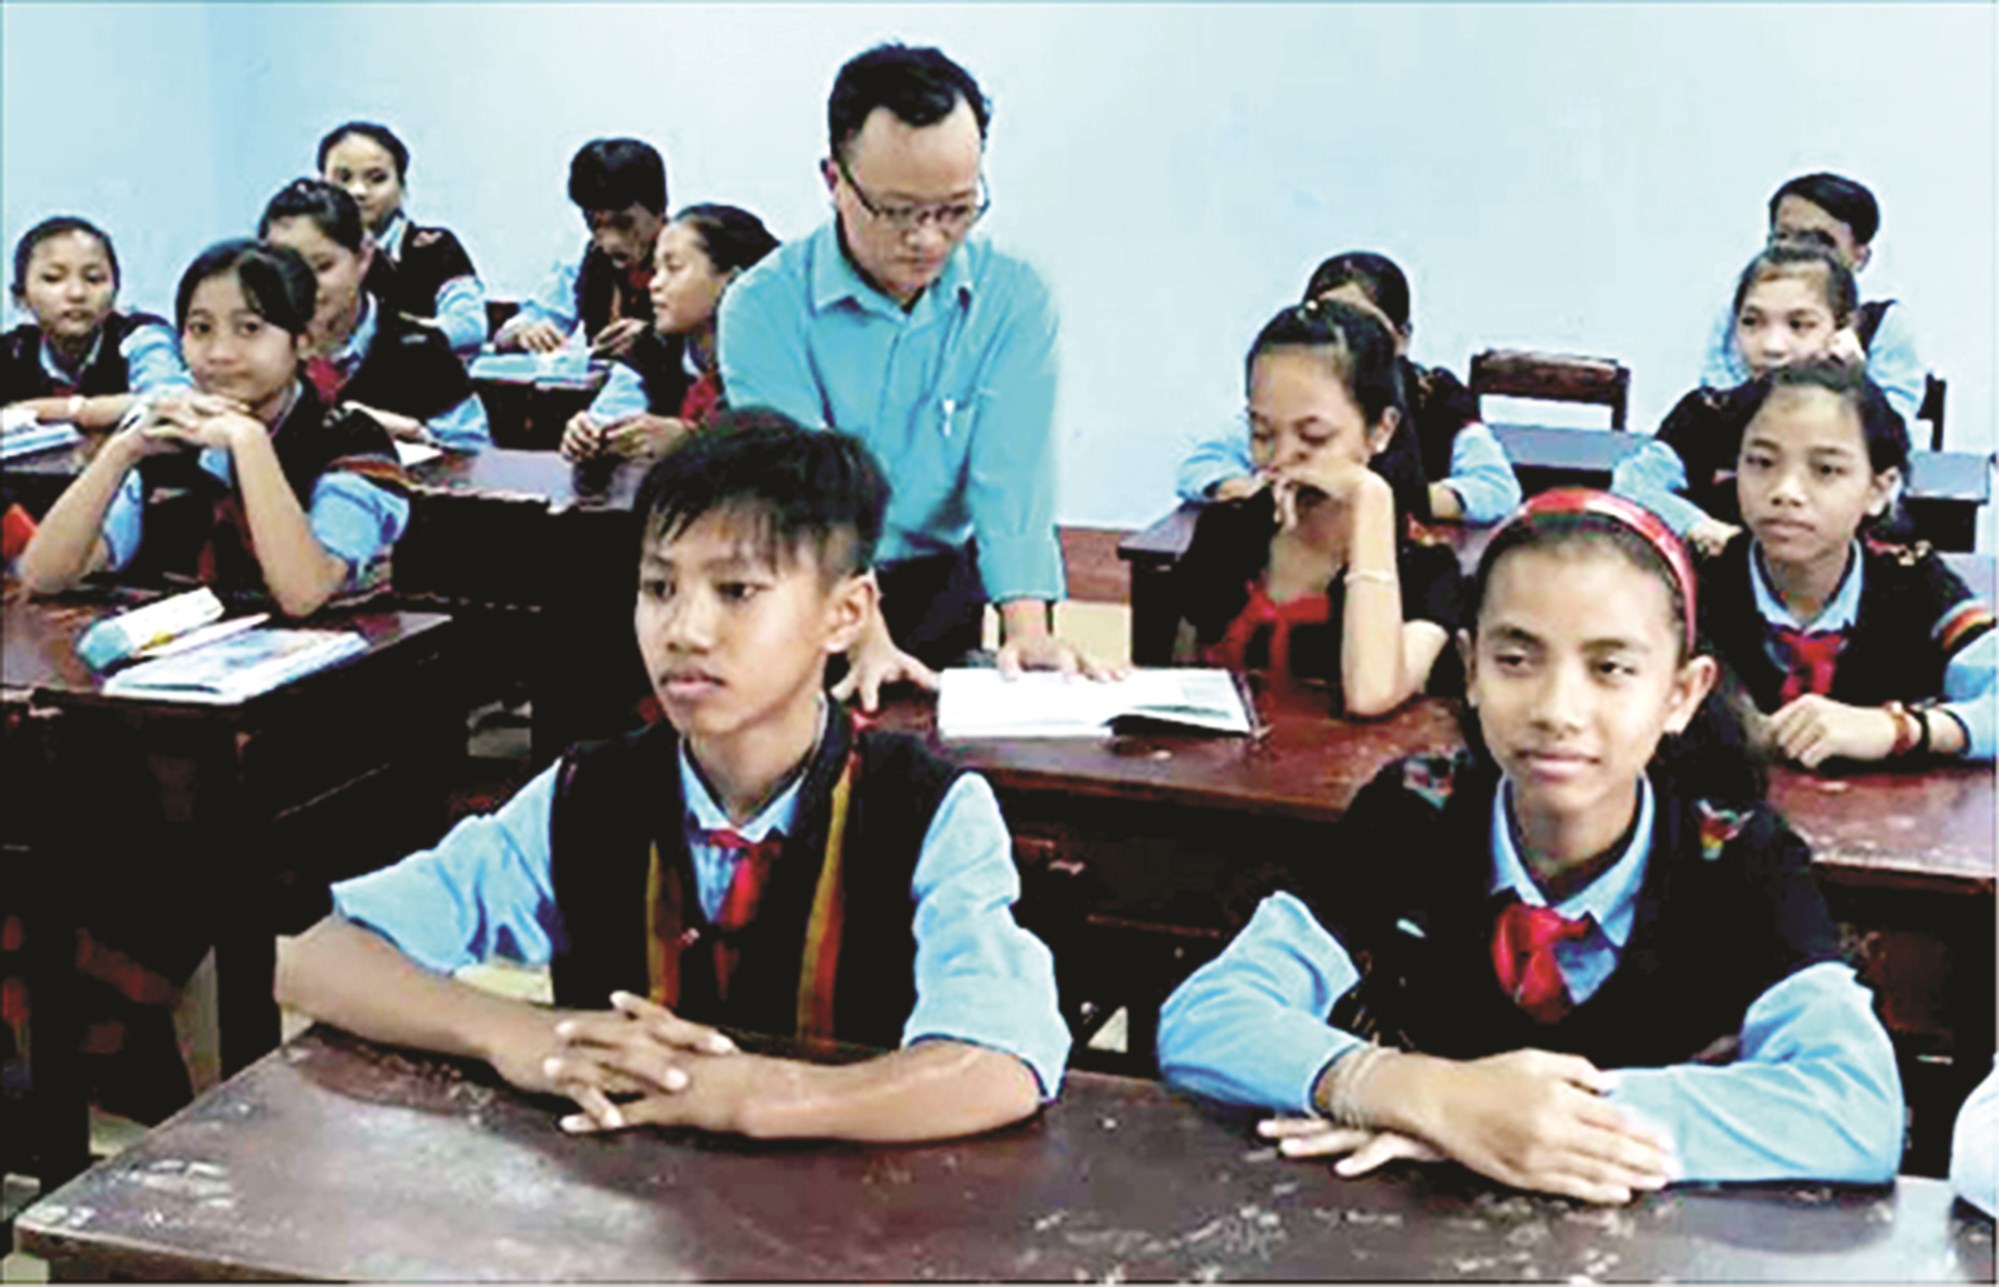 Chương trình thắp sáng ước mơ thiếu nhi DTTS tạo cơ hội cho các emcó điều kiện vươn lên trong học tập. (Trong ảnh: Một lớp học của Trường Dân tộc nội trú huyện Nam Đông).